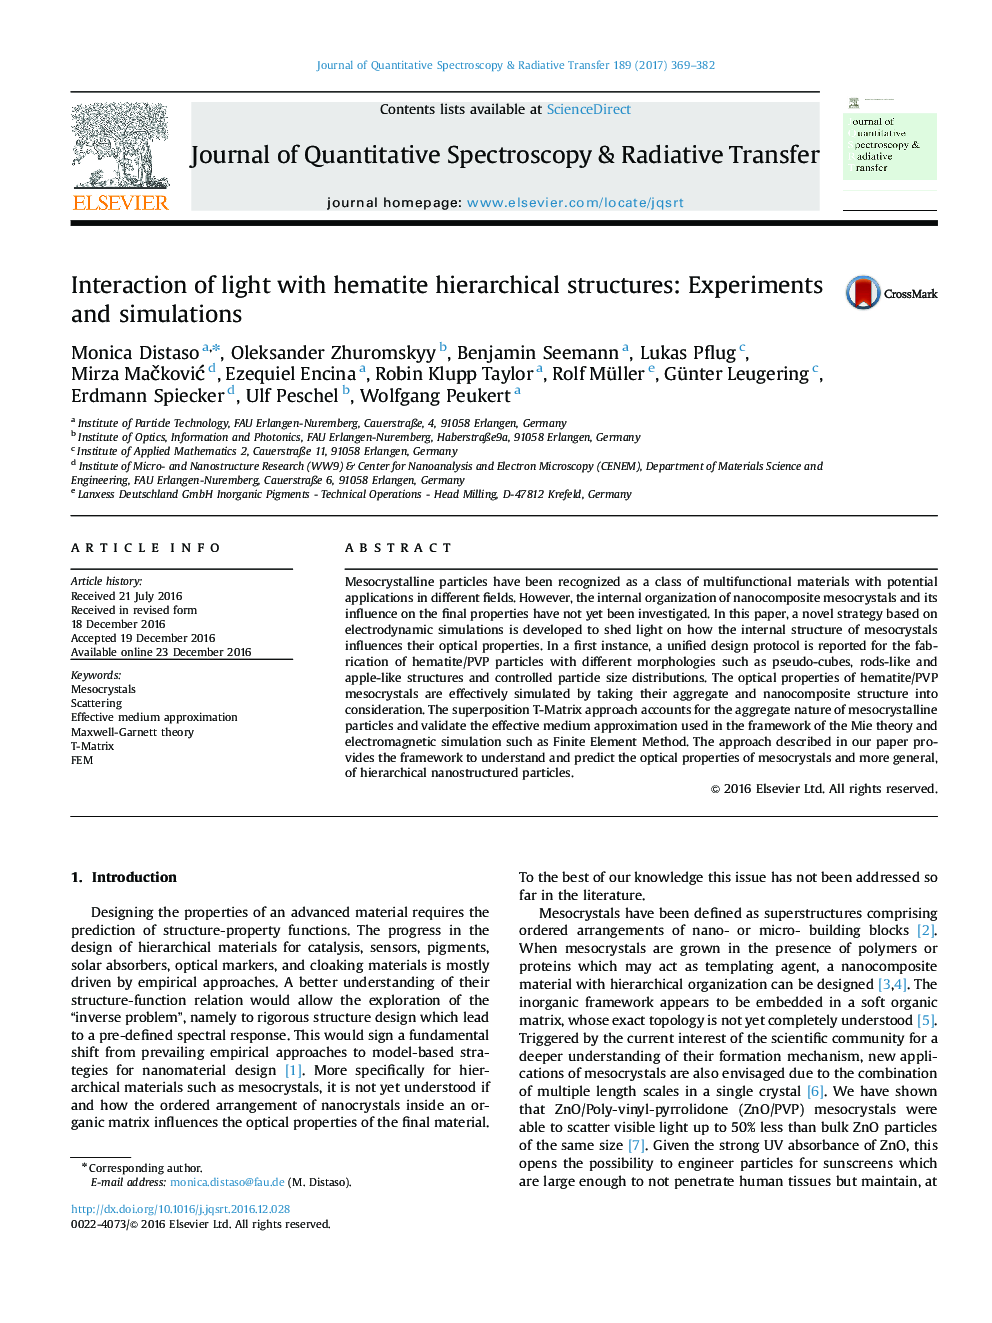 تعامل نور با ساختار سلسله مراتبی هماتیت: آزمایش و شبیه سازی 